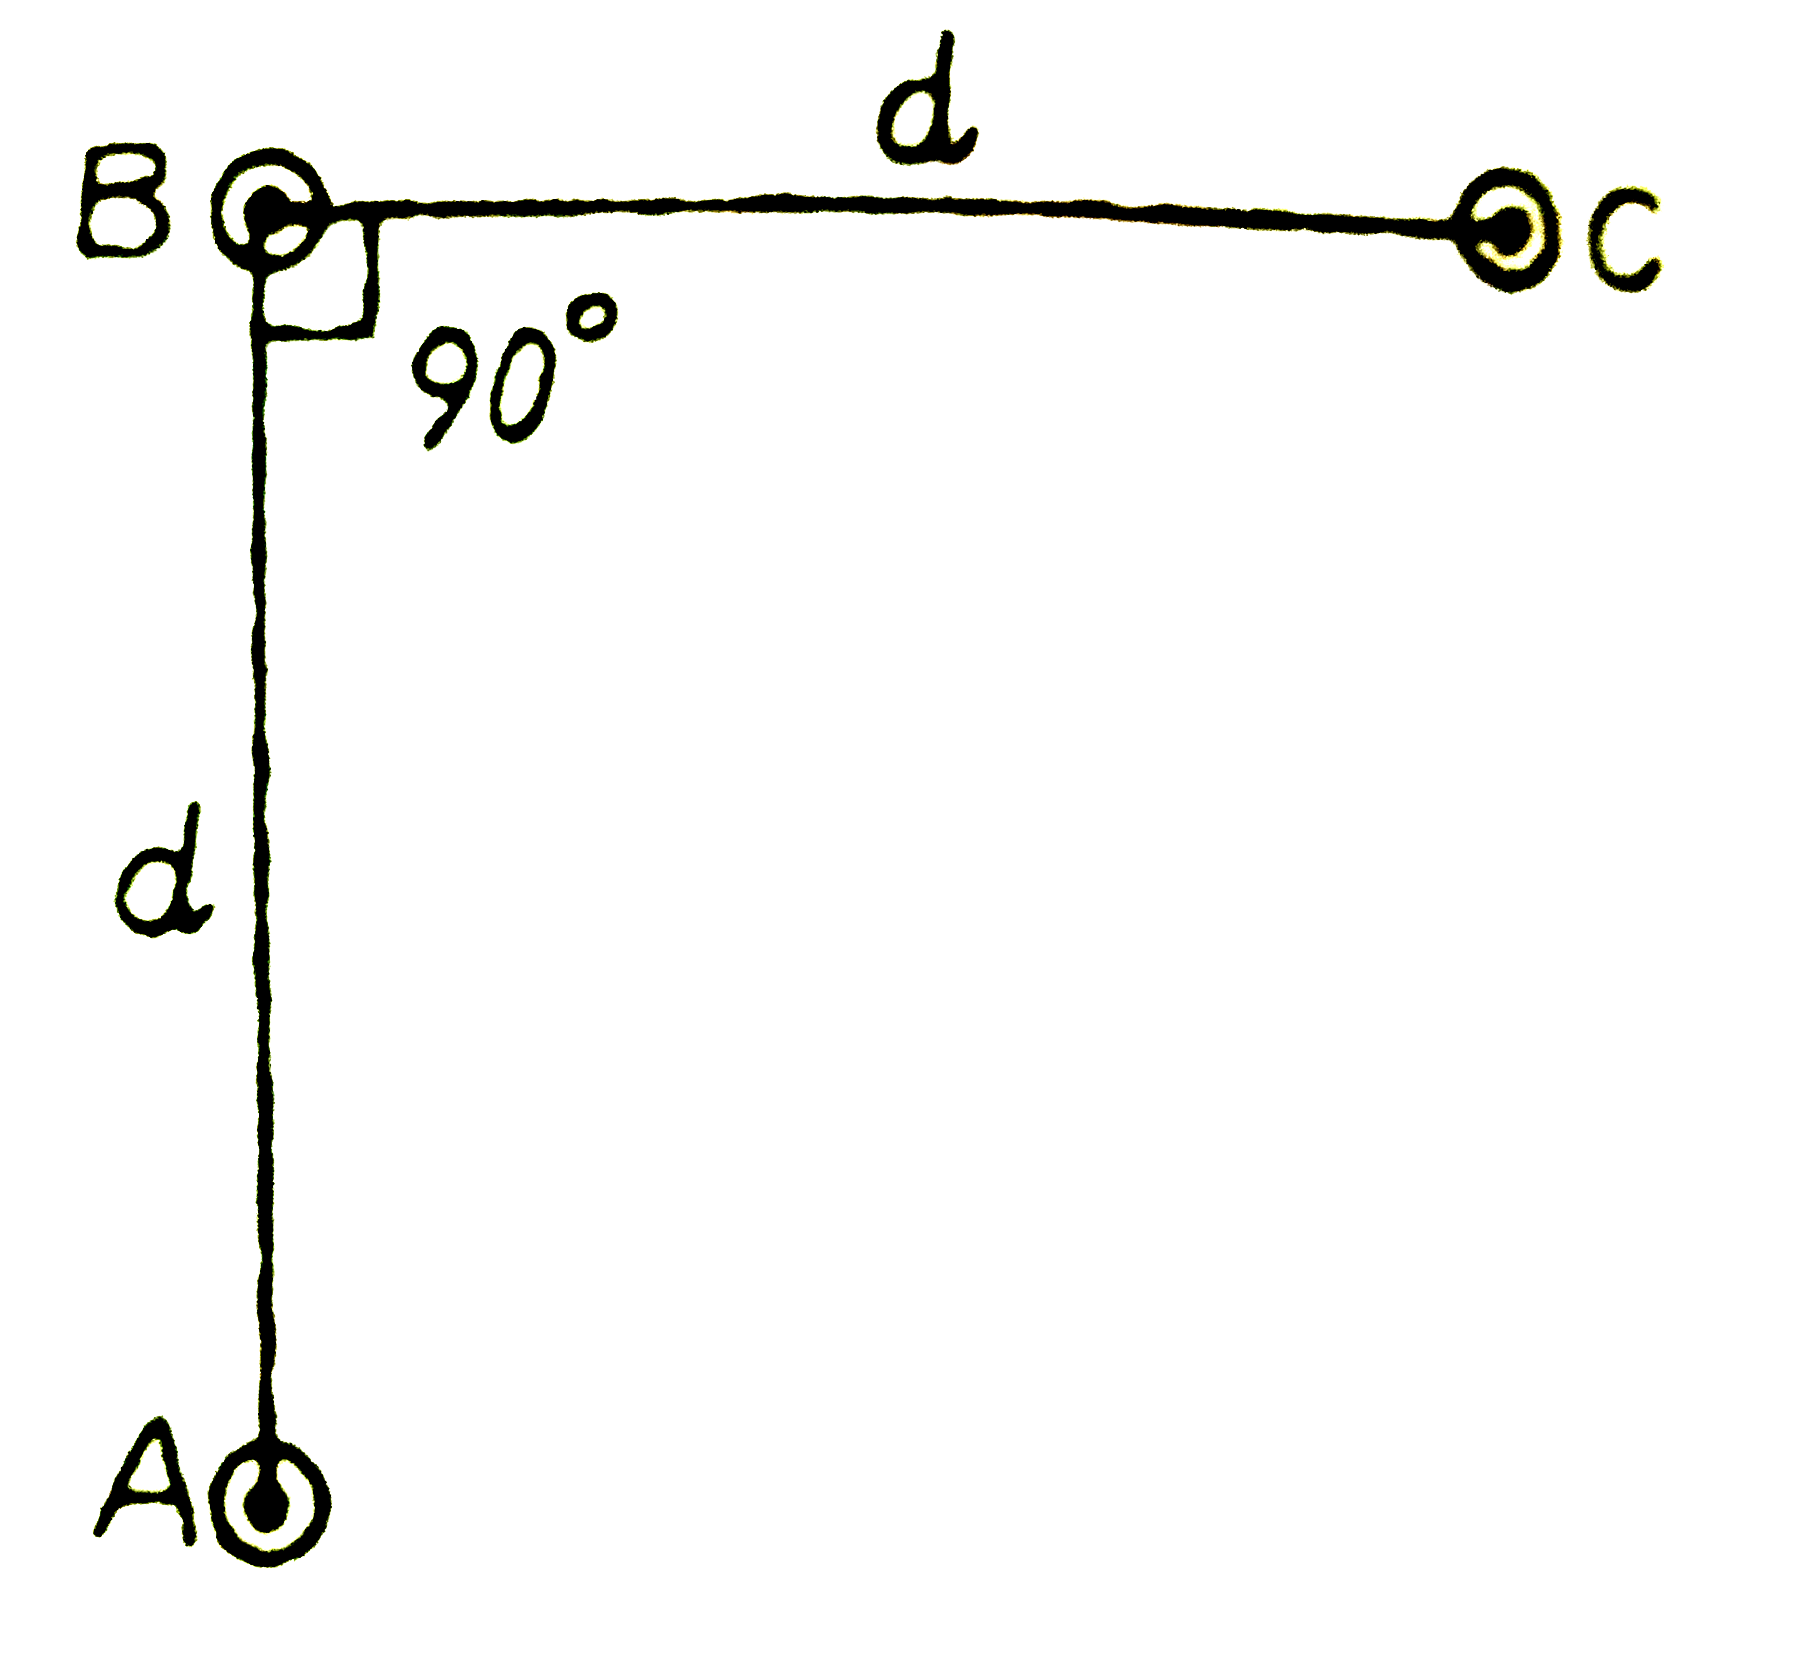 यहाँ आरेख में तीन समान्तर तारों की एक व्यवस्था दर्शायी है। ये तार इस पेपर (पृष्ठ) के समतल के लंबवत है और सभी से 'I' वैधुत धारा एक ही दिशा में प्रवाहित हो रही है। इन तीनो के बीच में स्थित तार B की प्रति एकांक लम्बाई पर लगने वाले बल का परिमाण होगा :